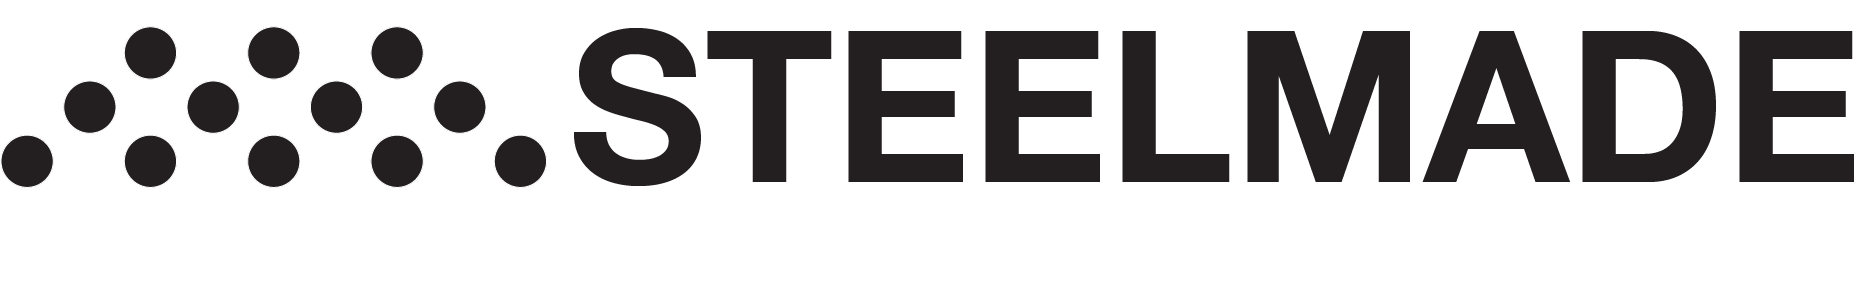 Steelmade Cookware logo